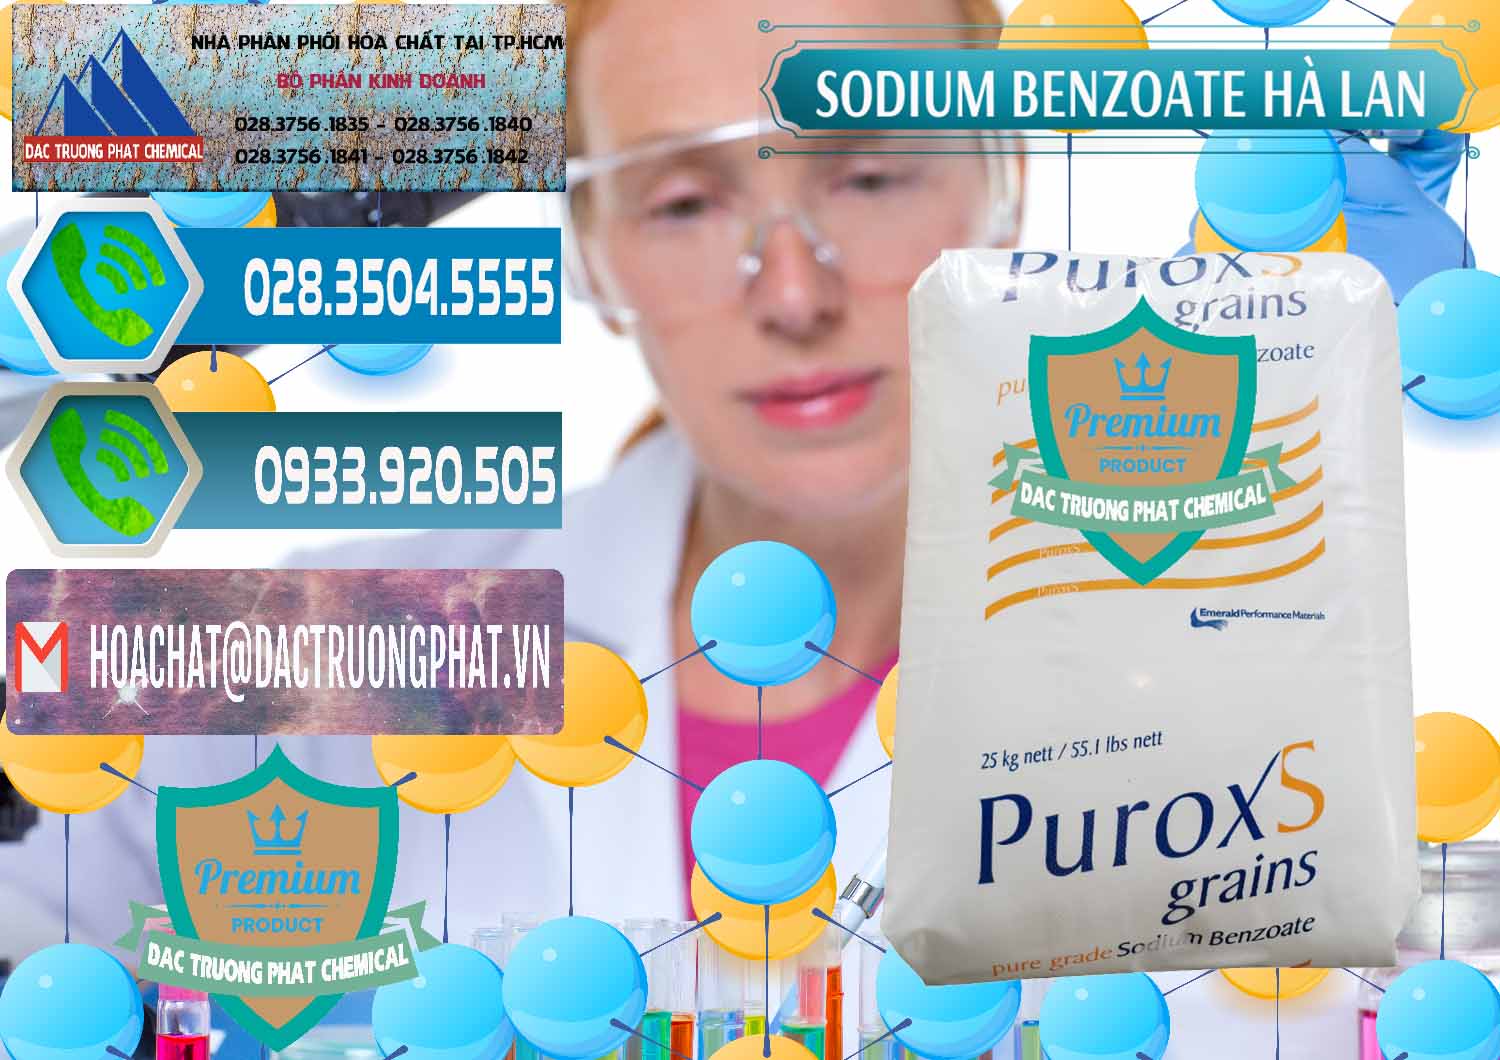 Công ty phân phối và bán Sodium Benzoate - Mốc Bột Puroxs Hà Lan Netherlands - 0467 - Cung cấp - bán hóa chất tại TP.HCM - congtyhoachat.net